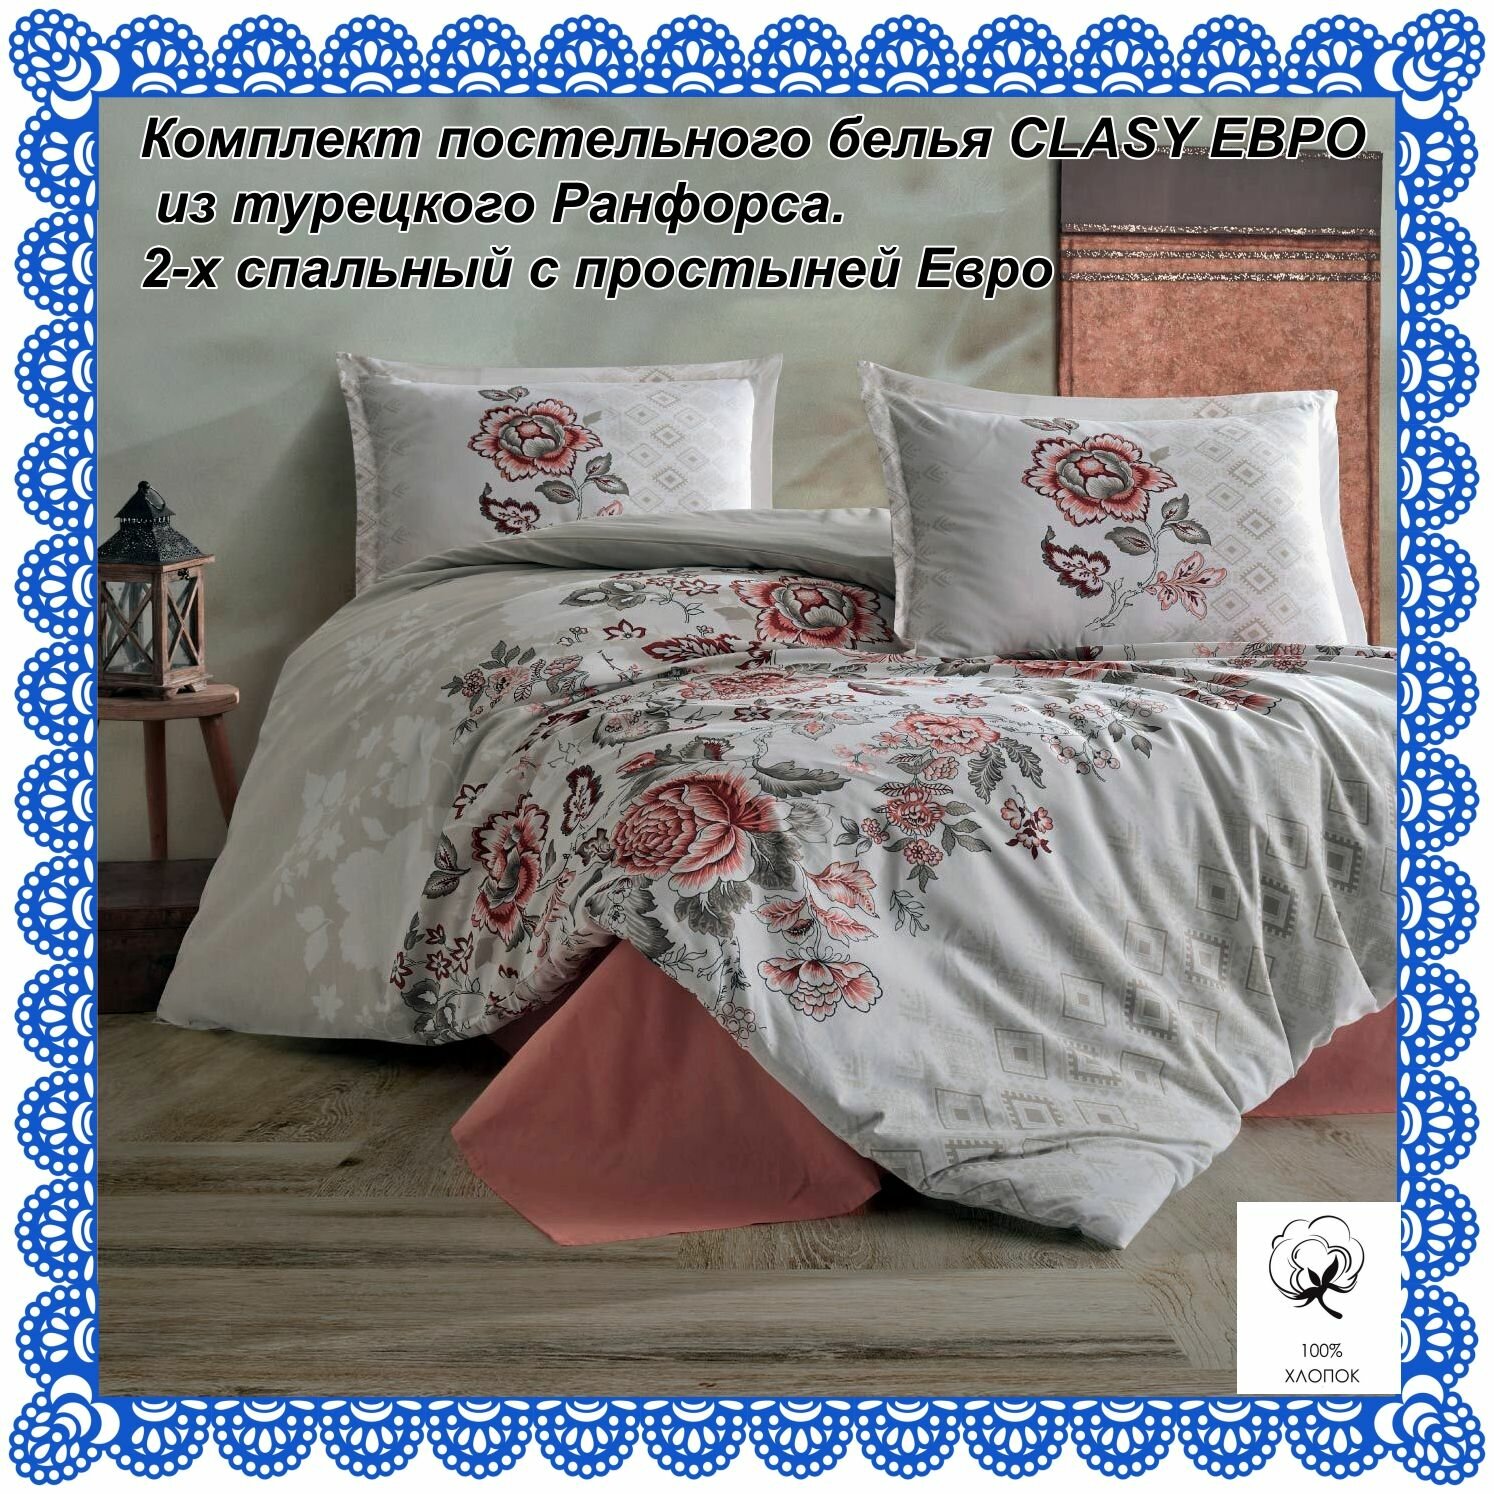 Комплект постельного белья CLASY евро из турецкого ранфорса.